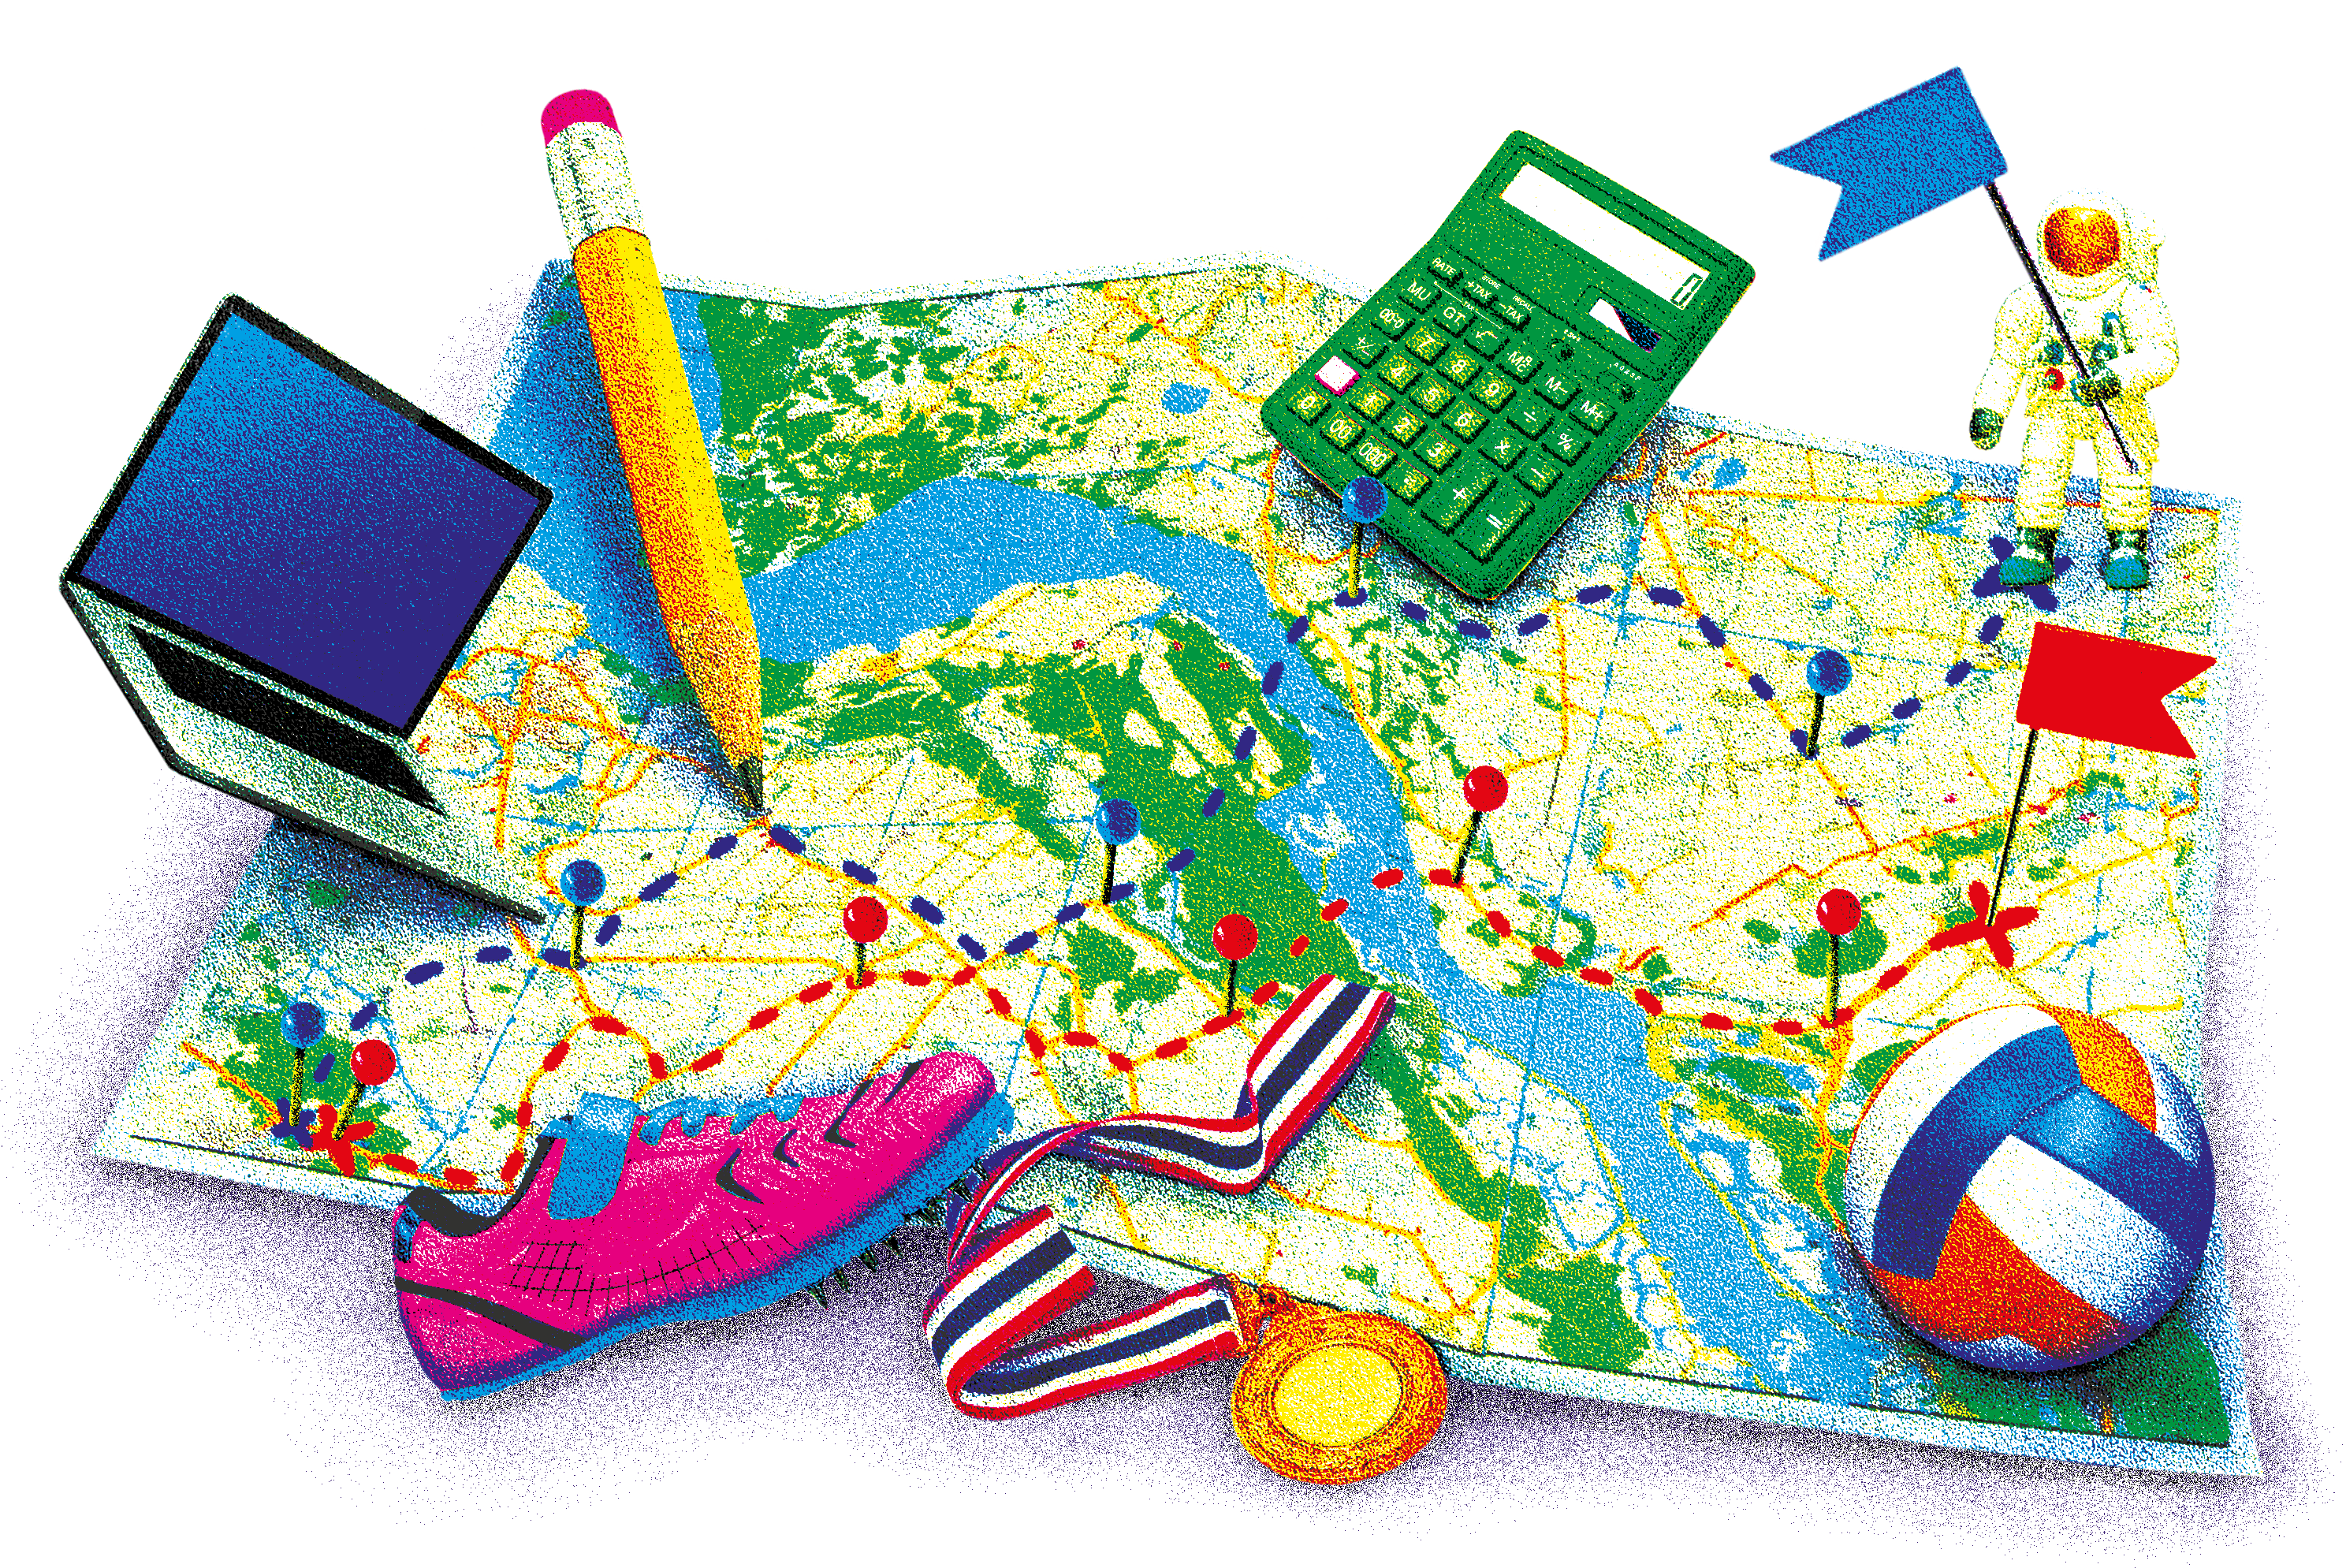 Eine Montage an Bildern von einer Landkarte auf der verschiedene Alltagsutensilien liegen - ein Ball, eine Medaille, ein Schuh, ein Laptop, ein Stift und ein Taschenrechner.